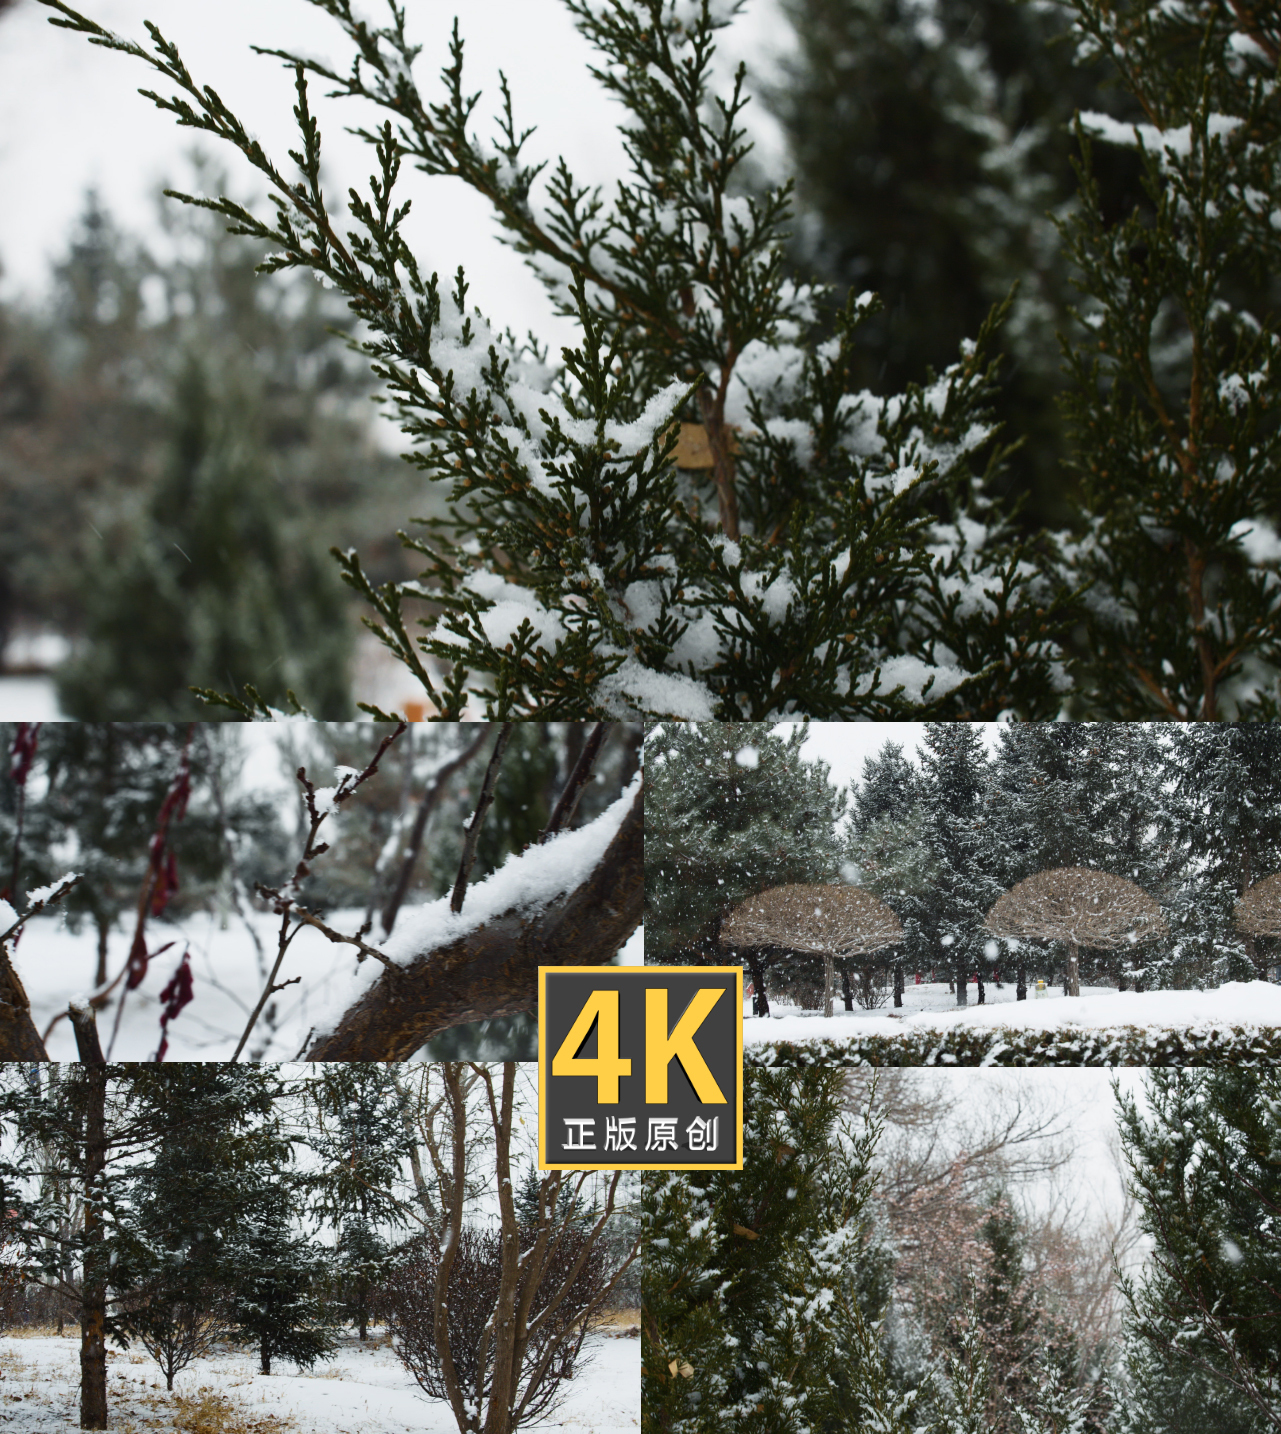 4K唯美雪景-下雪了升格镜头